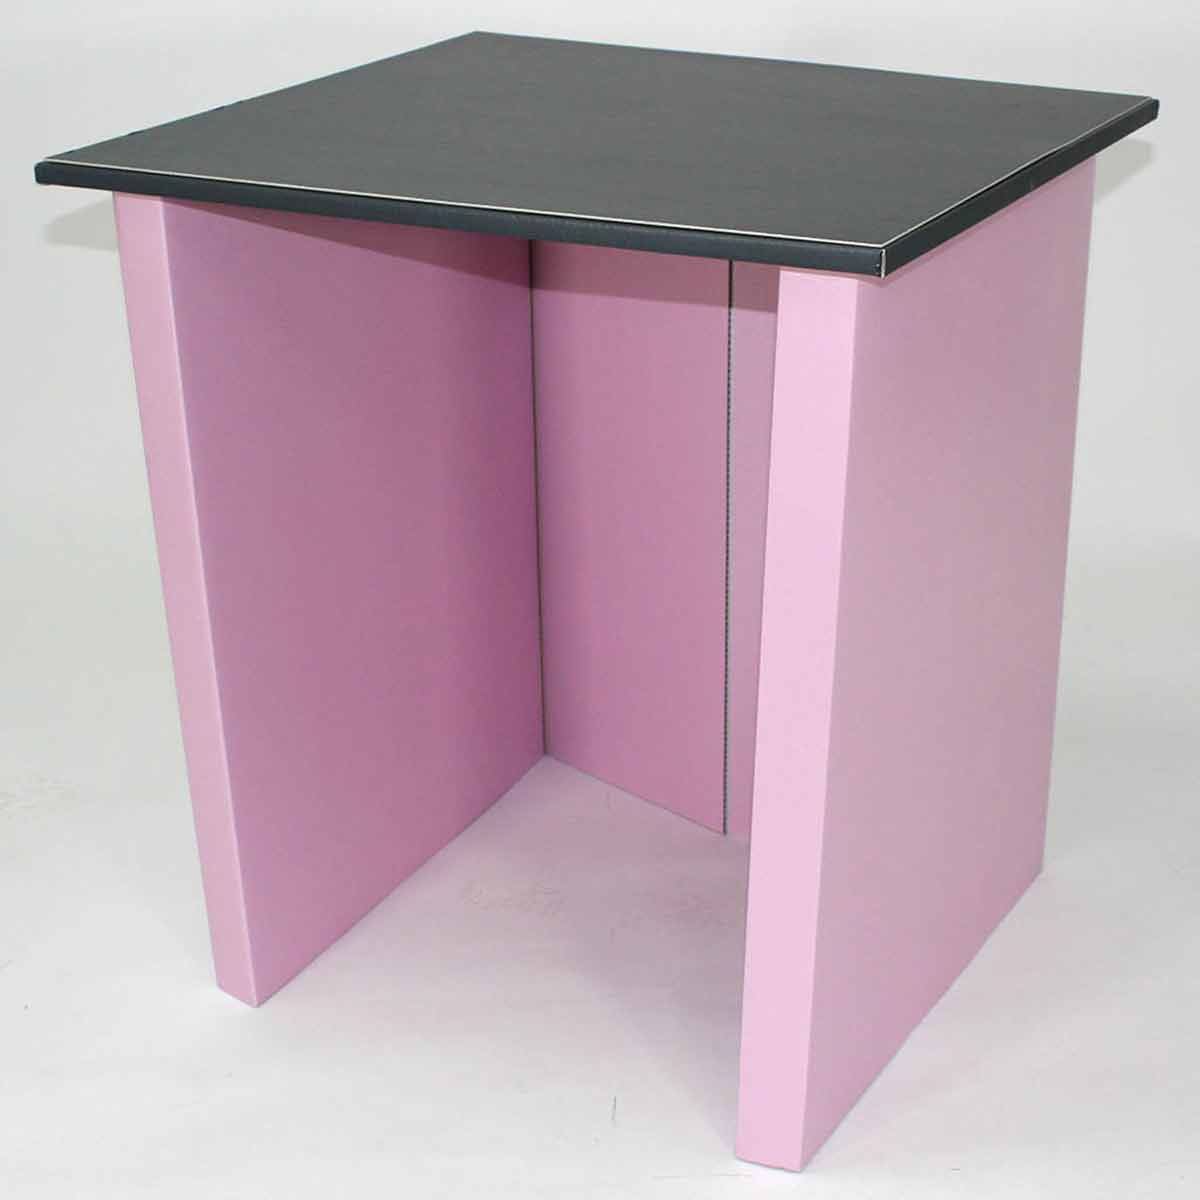 Medworx Pack A Desk - Work From Home Desk (pink)